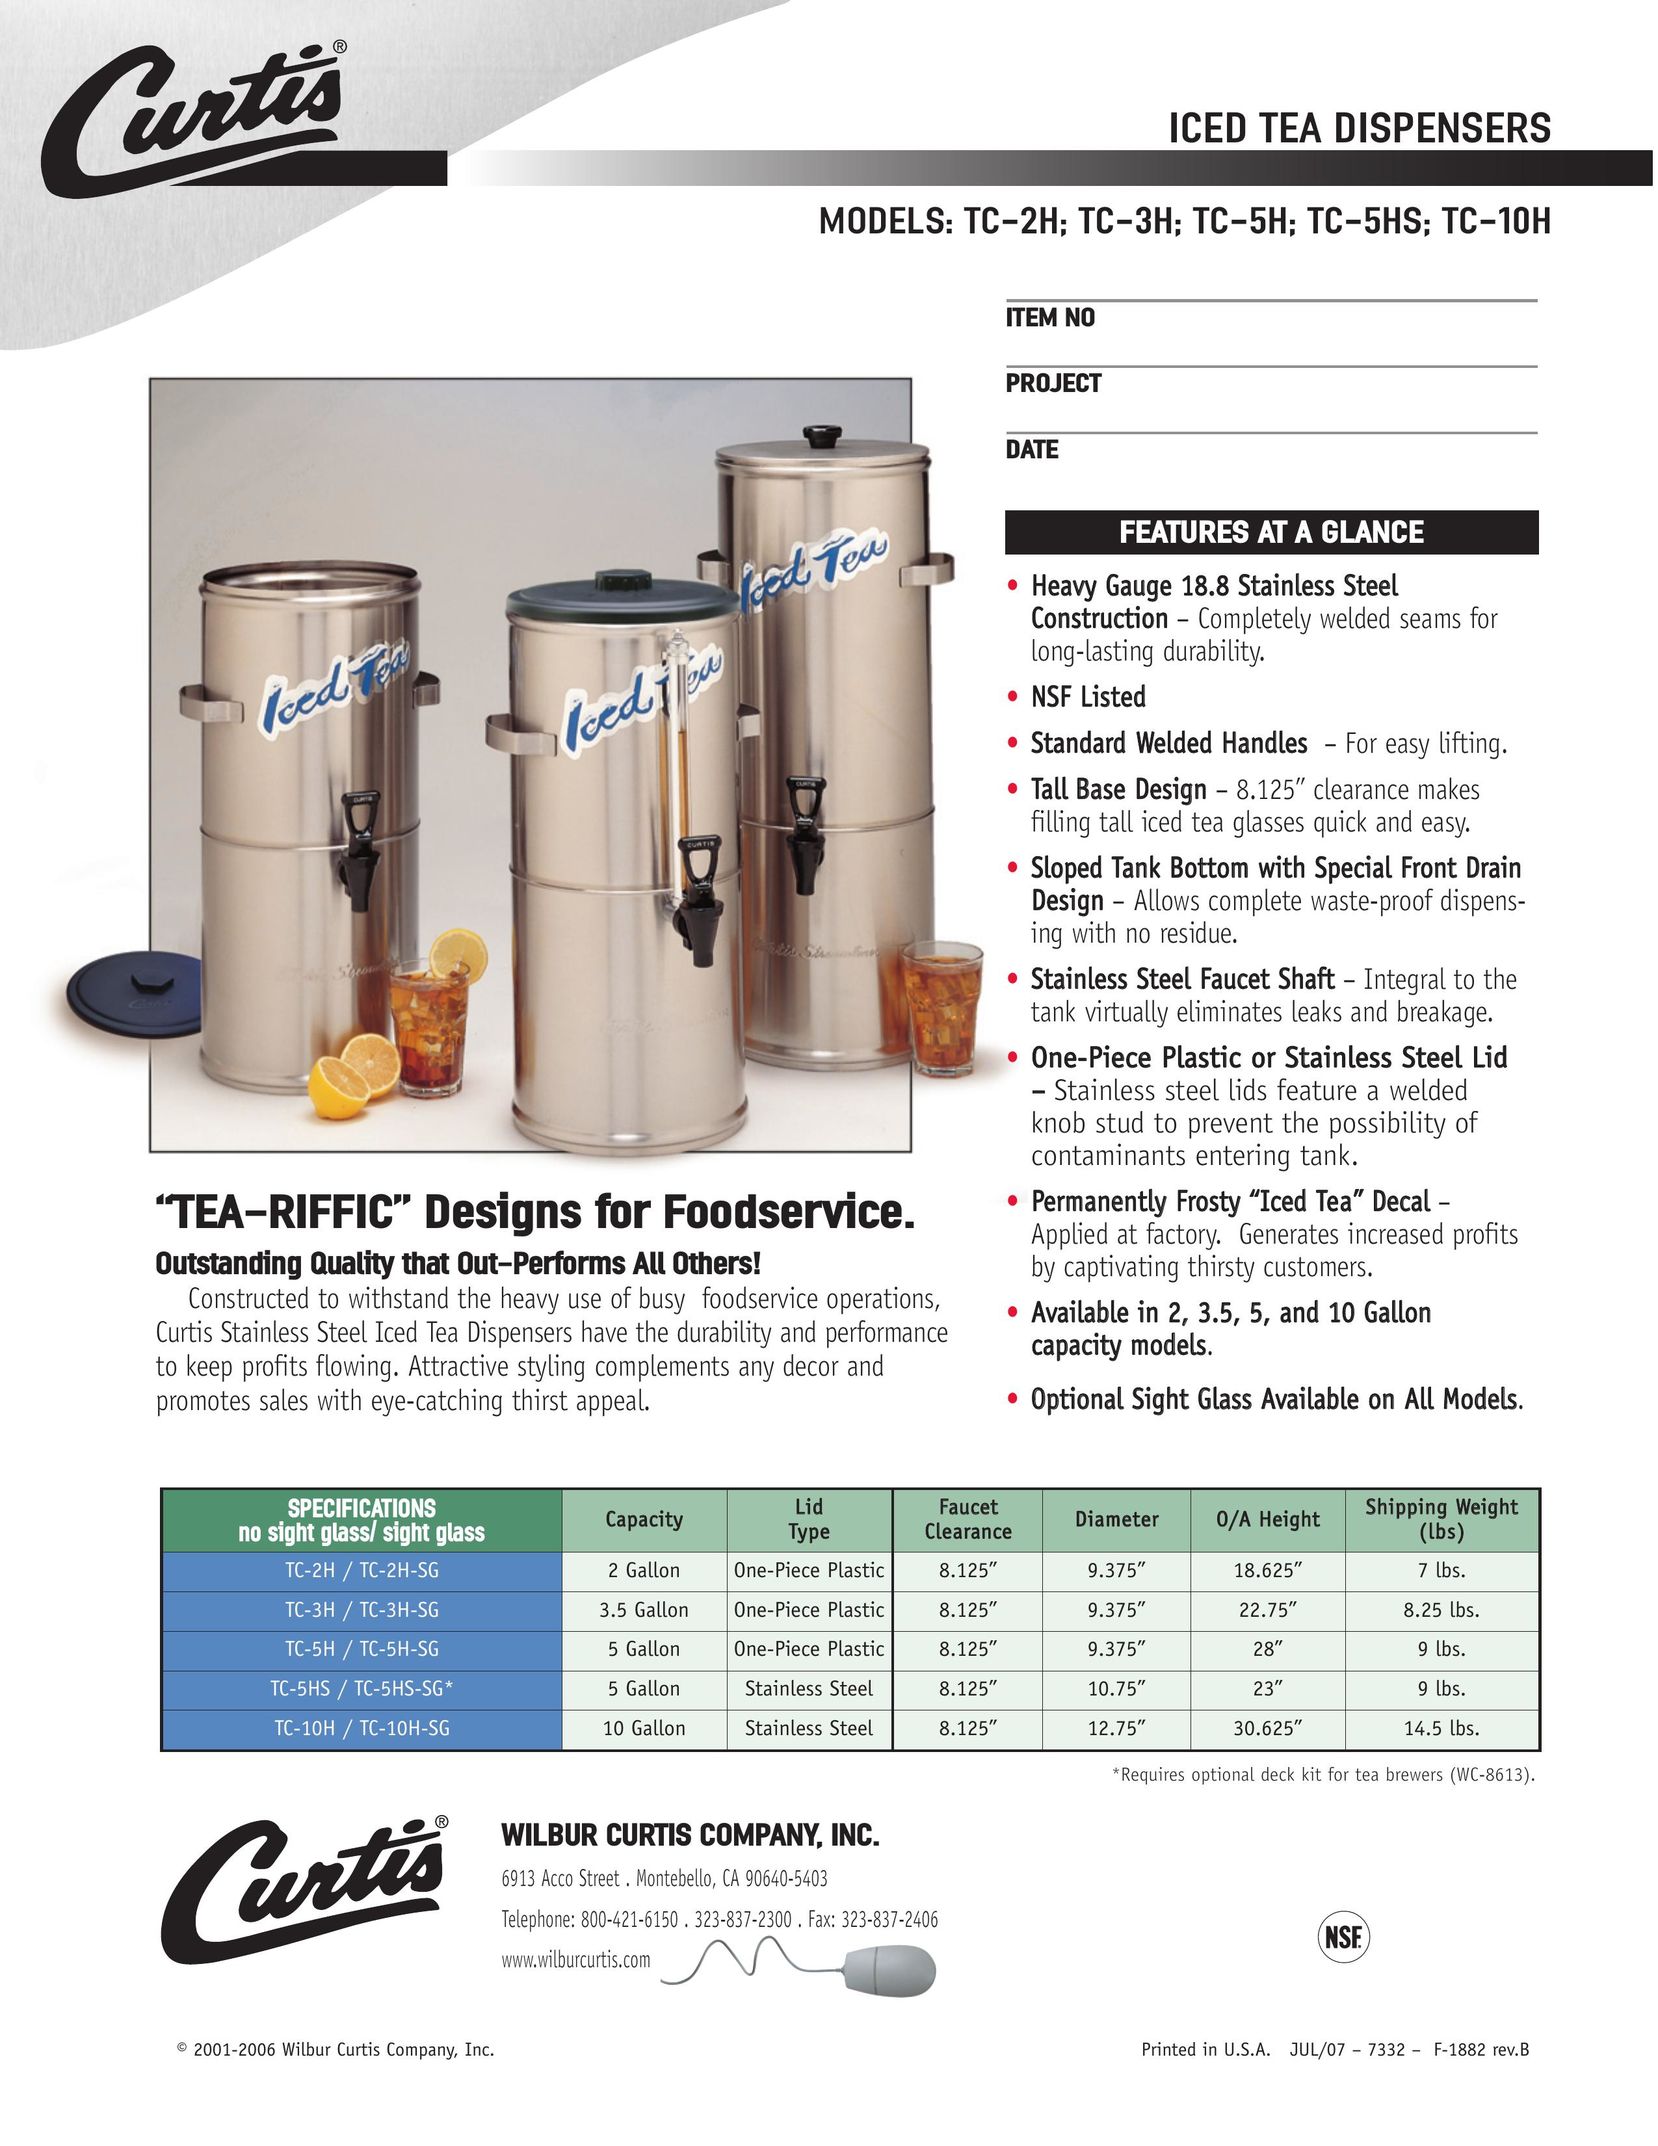 Wibur Curtis Company C-5HS Hot Beverage Maker User Manual